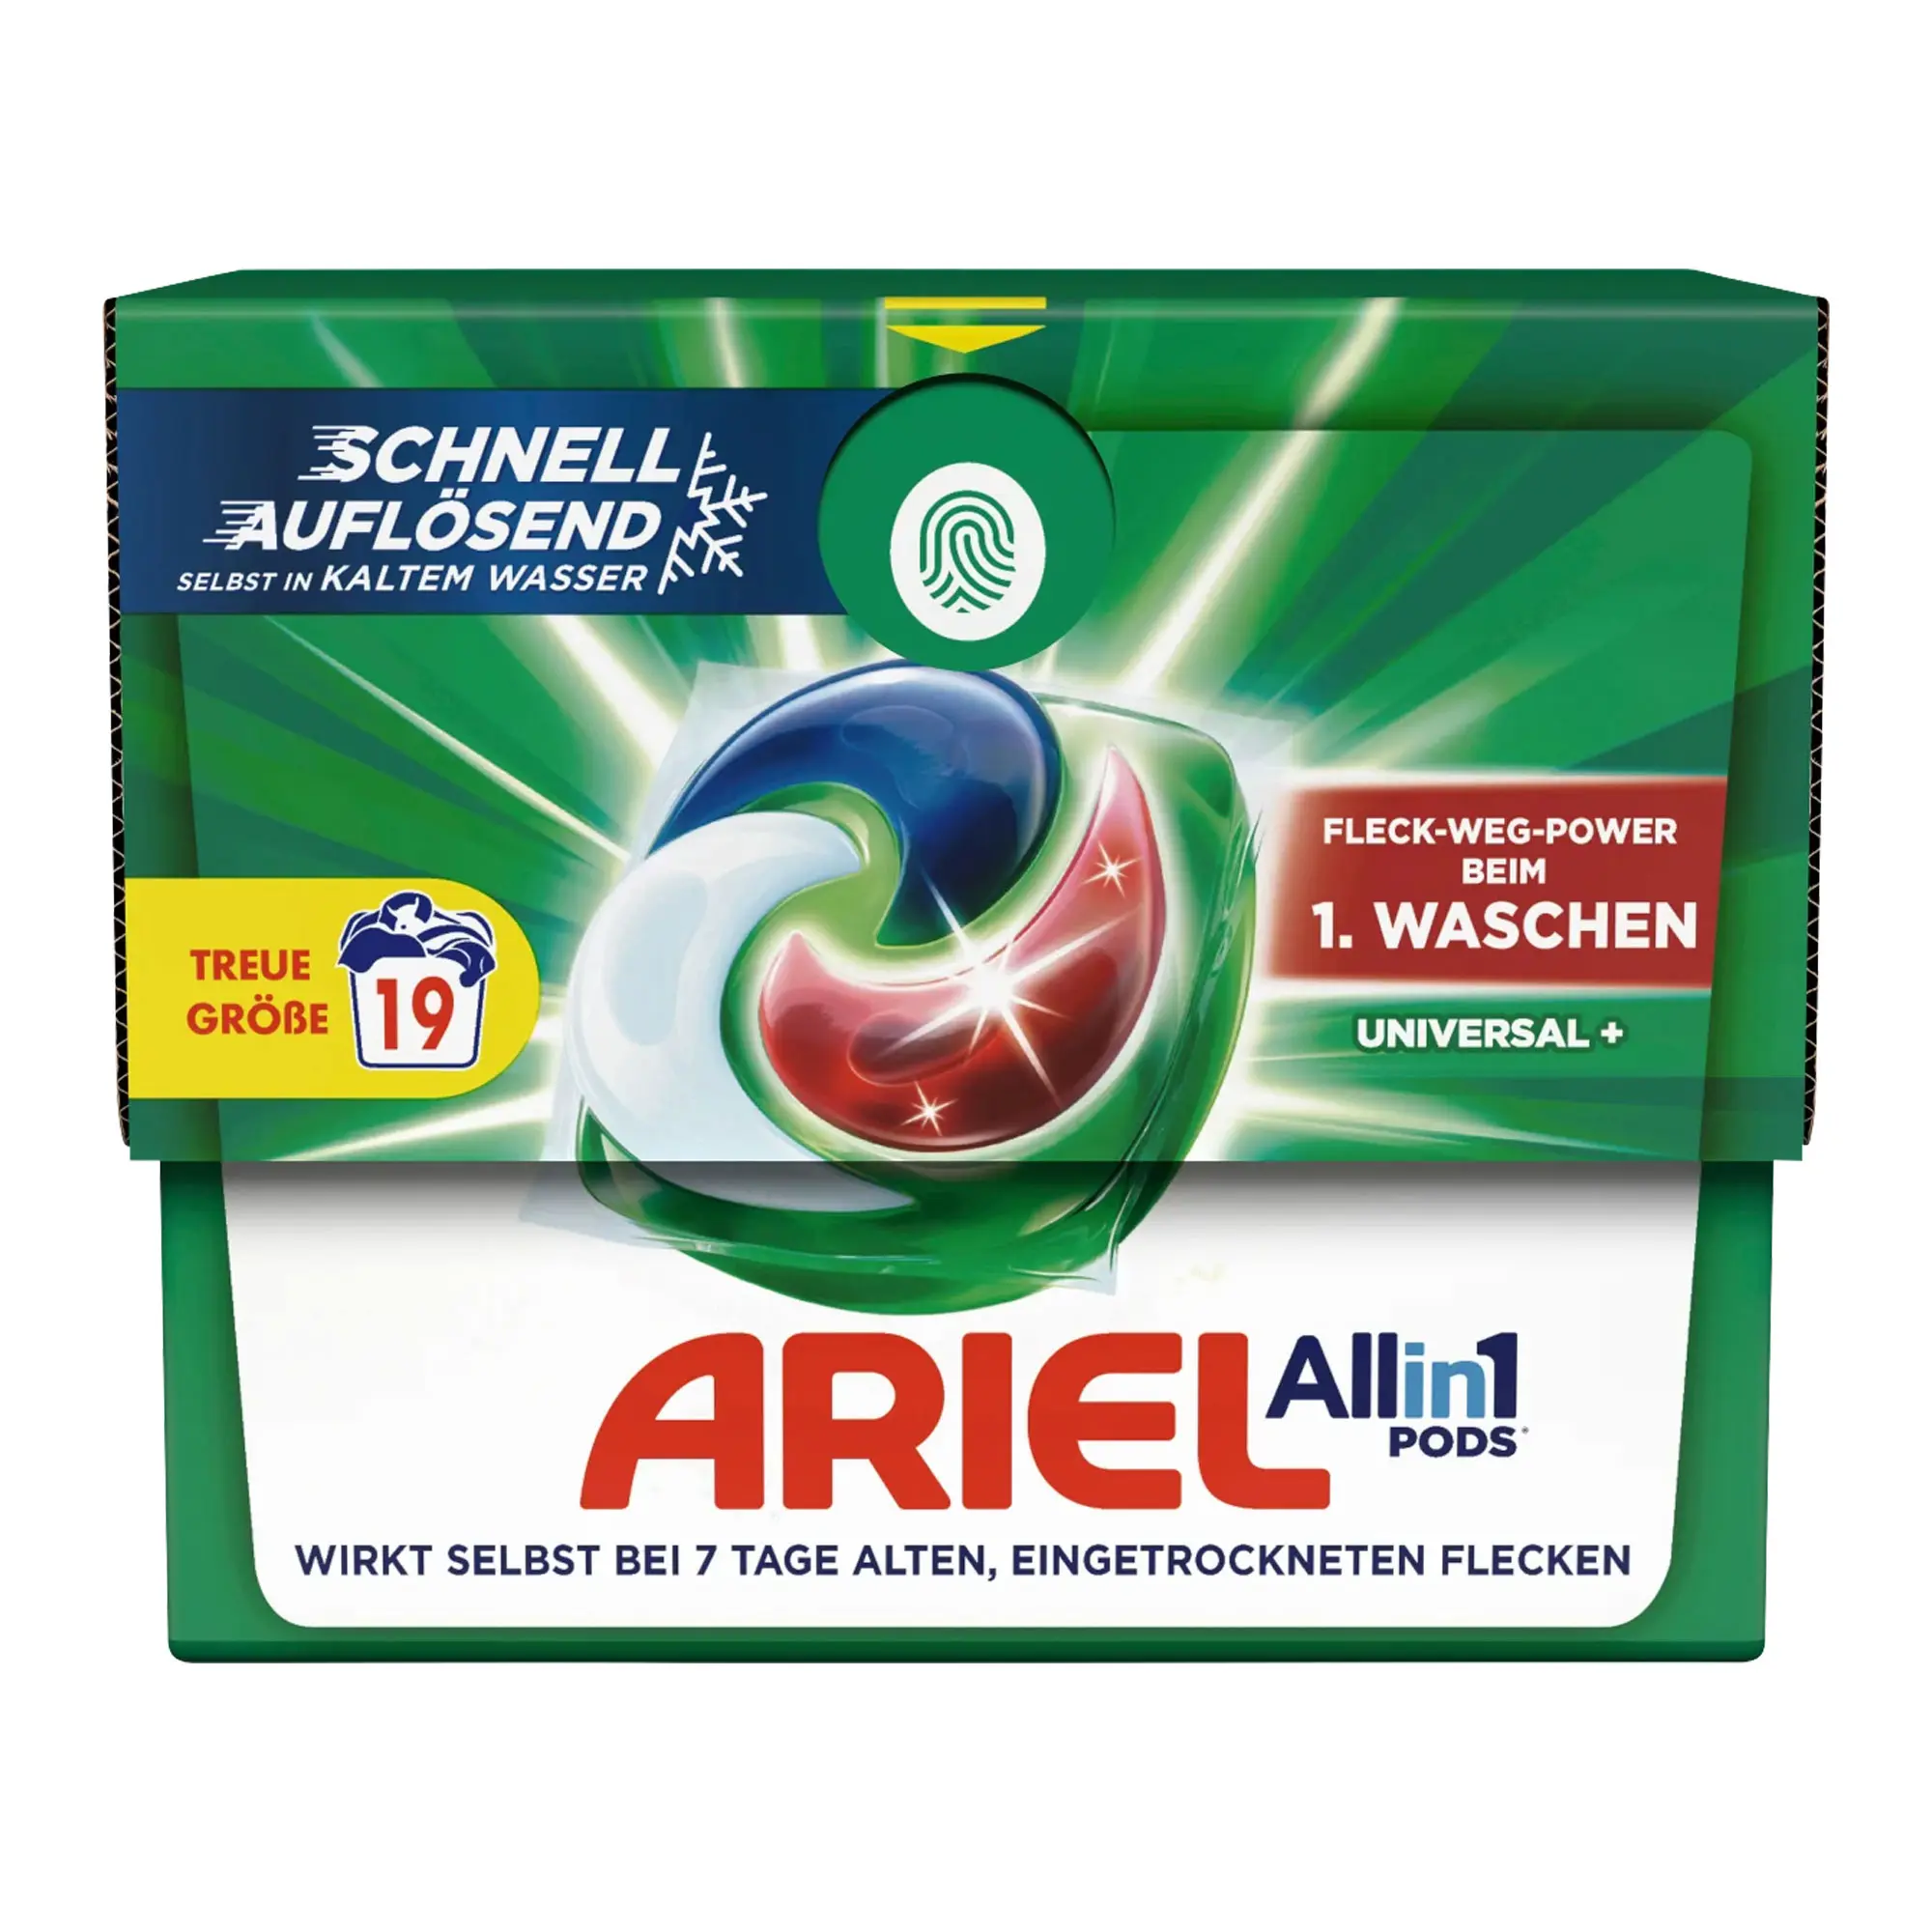 Ariel All-in-1 Pods Universal Vollwaschmittel, 19 Wl